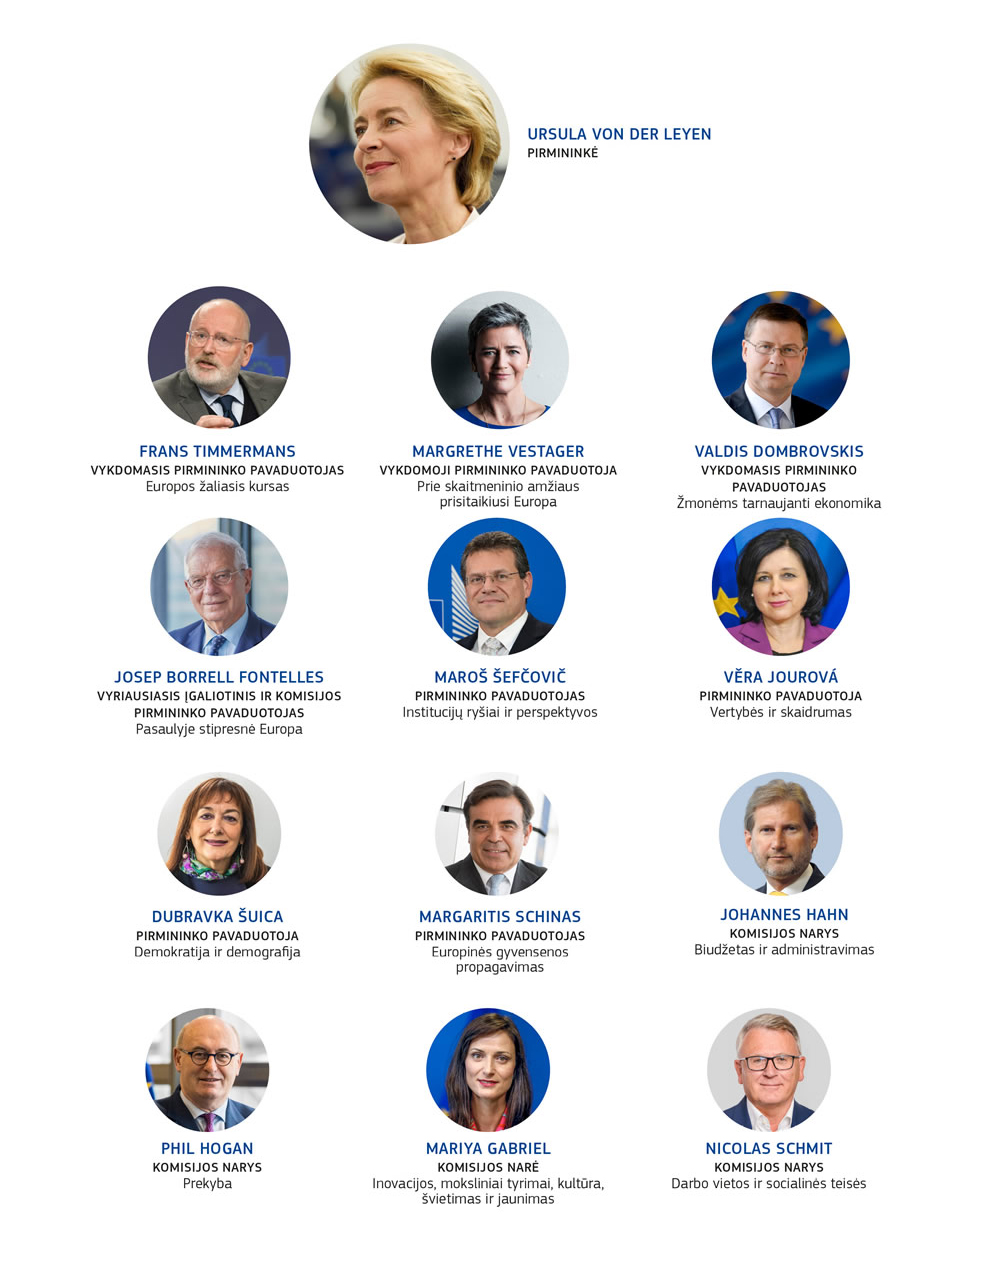 Komisijos narių kolegijos 2019–2024 metų atskirų narių nuotraukos ir atsakomybės sritys